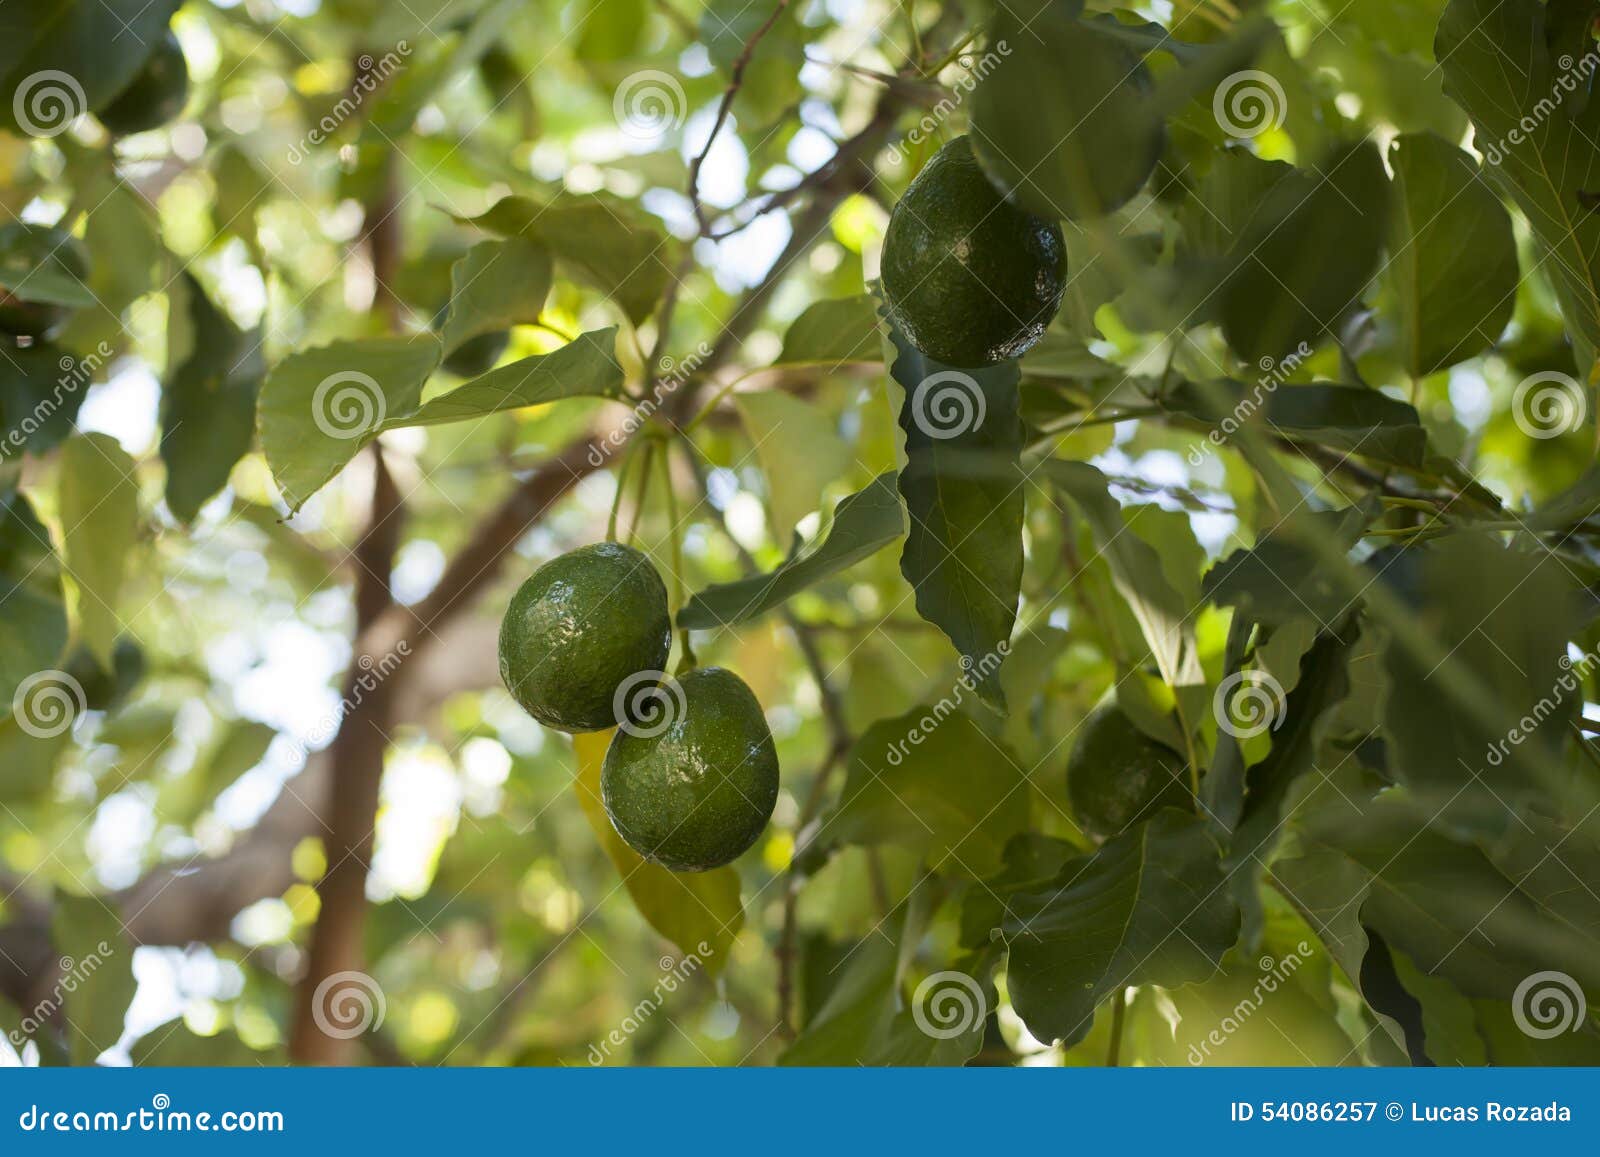 avocado growing on tree